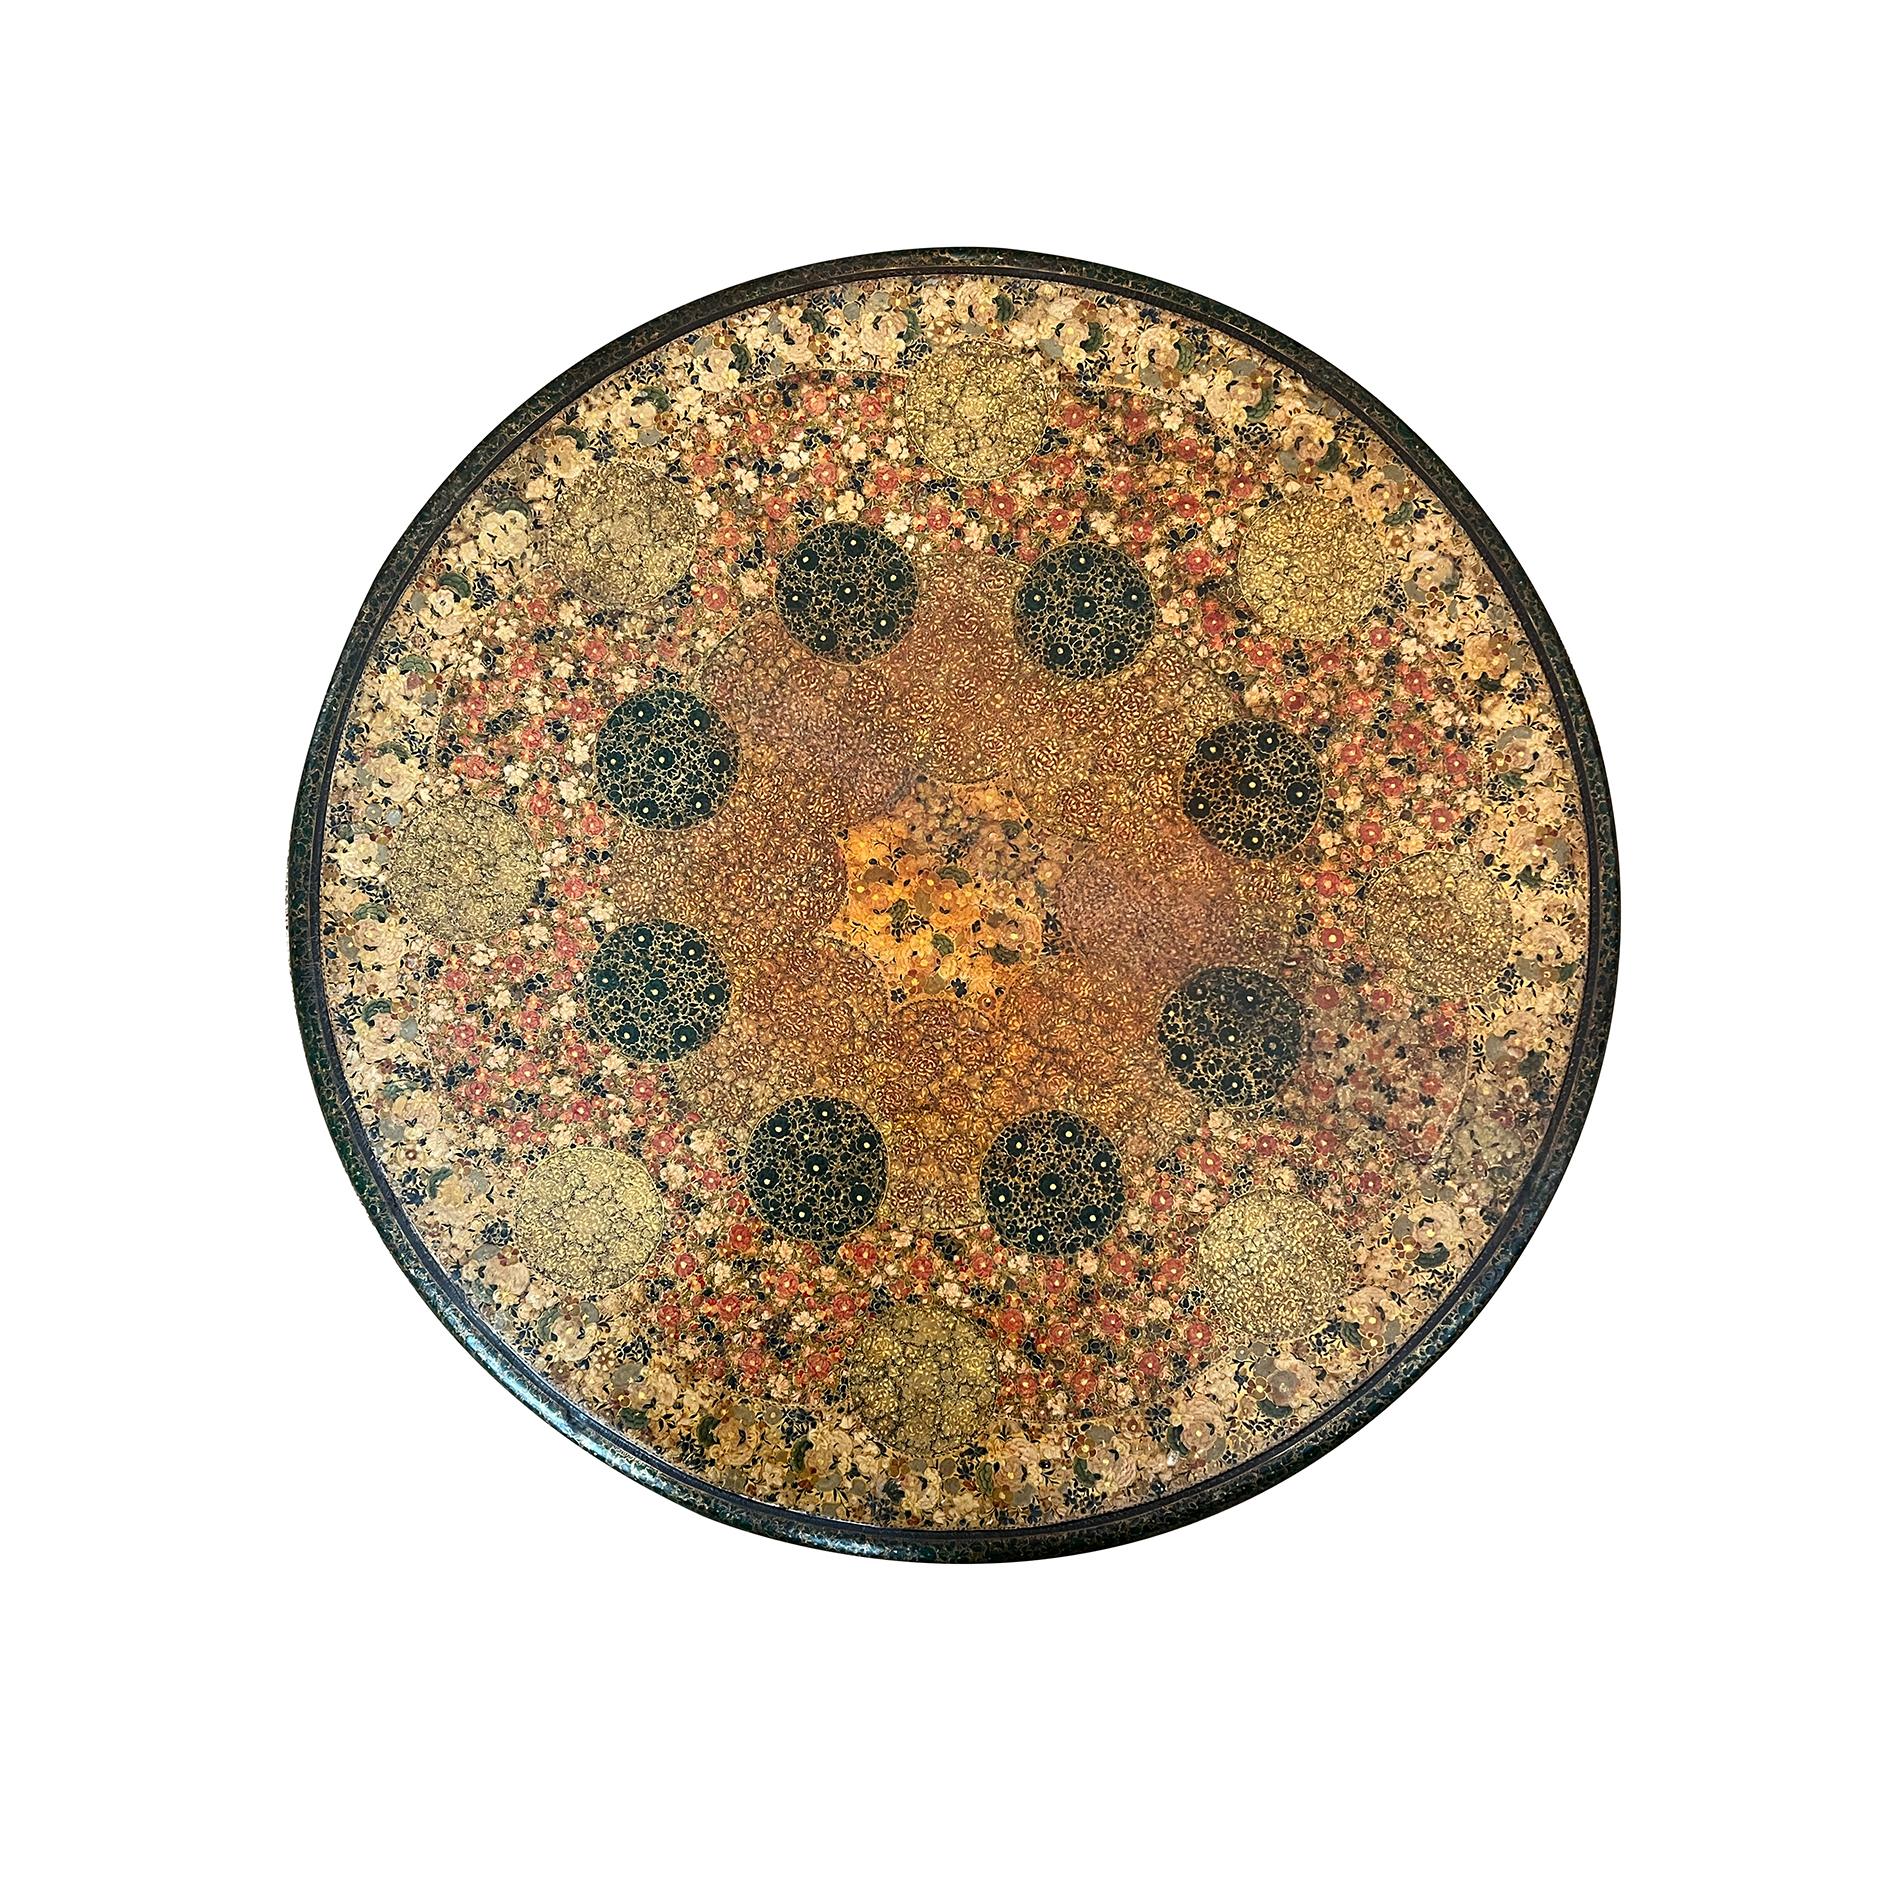  die runde Platte mit Viertelkante über einer flachen Schürze, die auf formschönen Cabriole-Stützen ruht; insgesamt reich verziert mit polychromen und vergoldeten Blumen und Blättern in traditioneller Manier